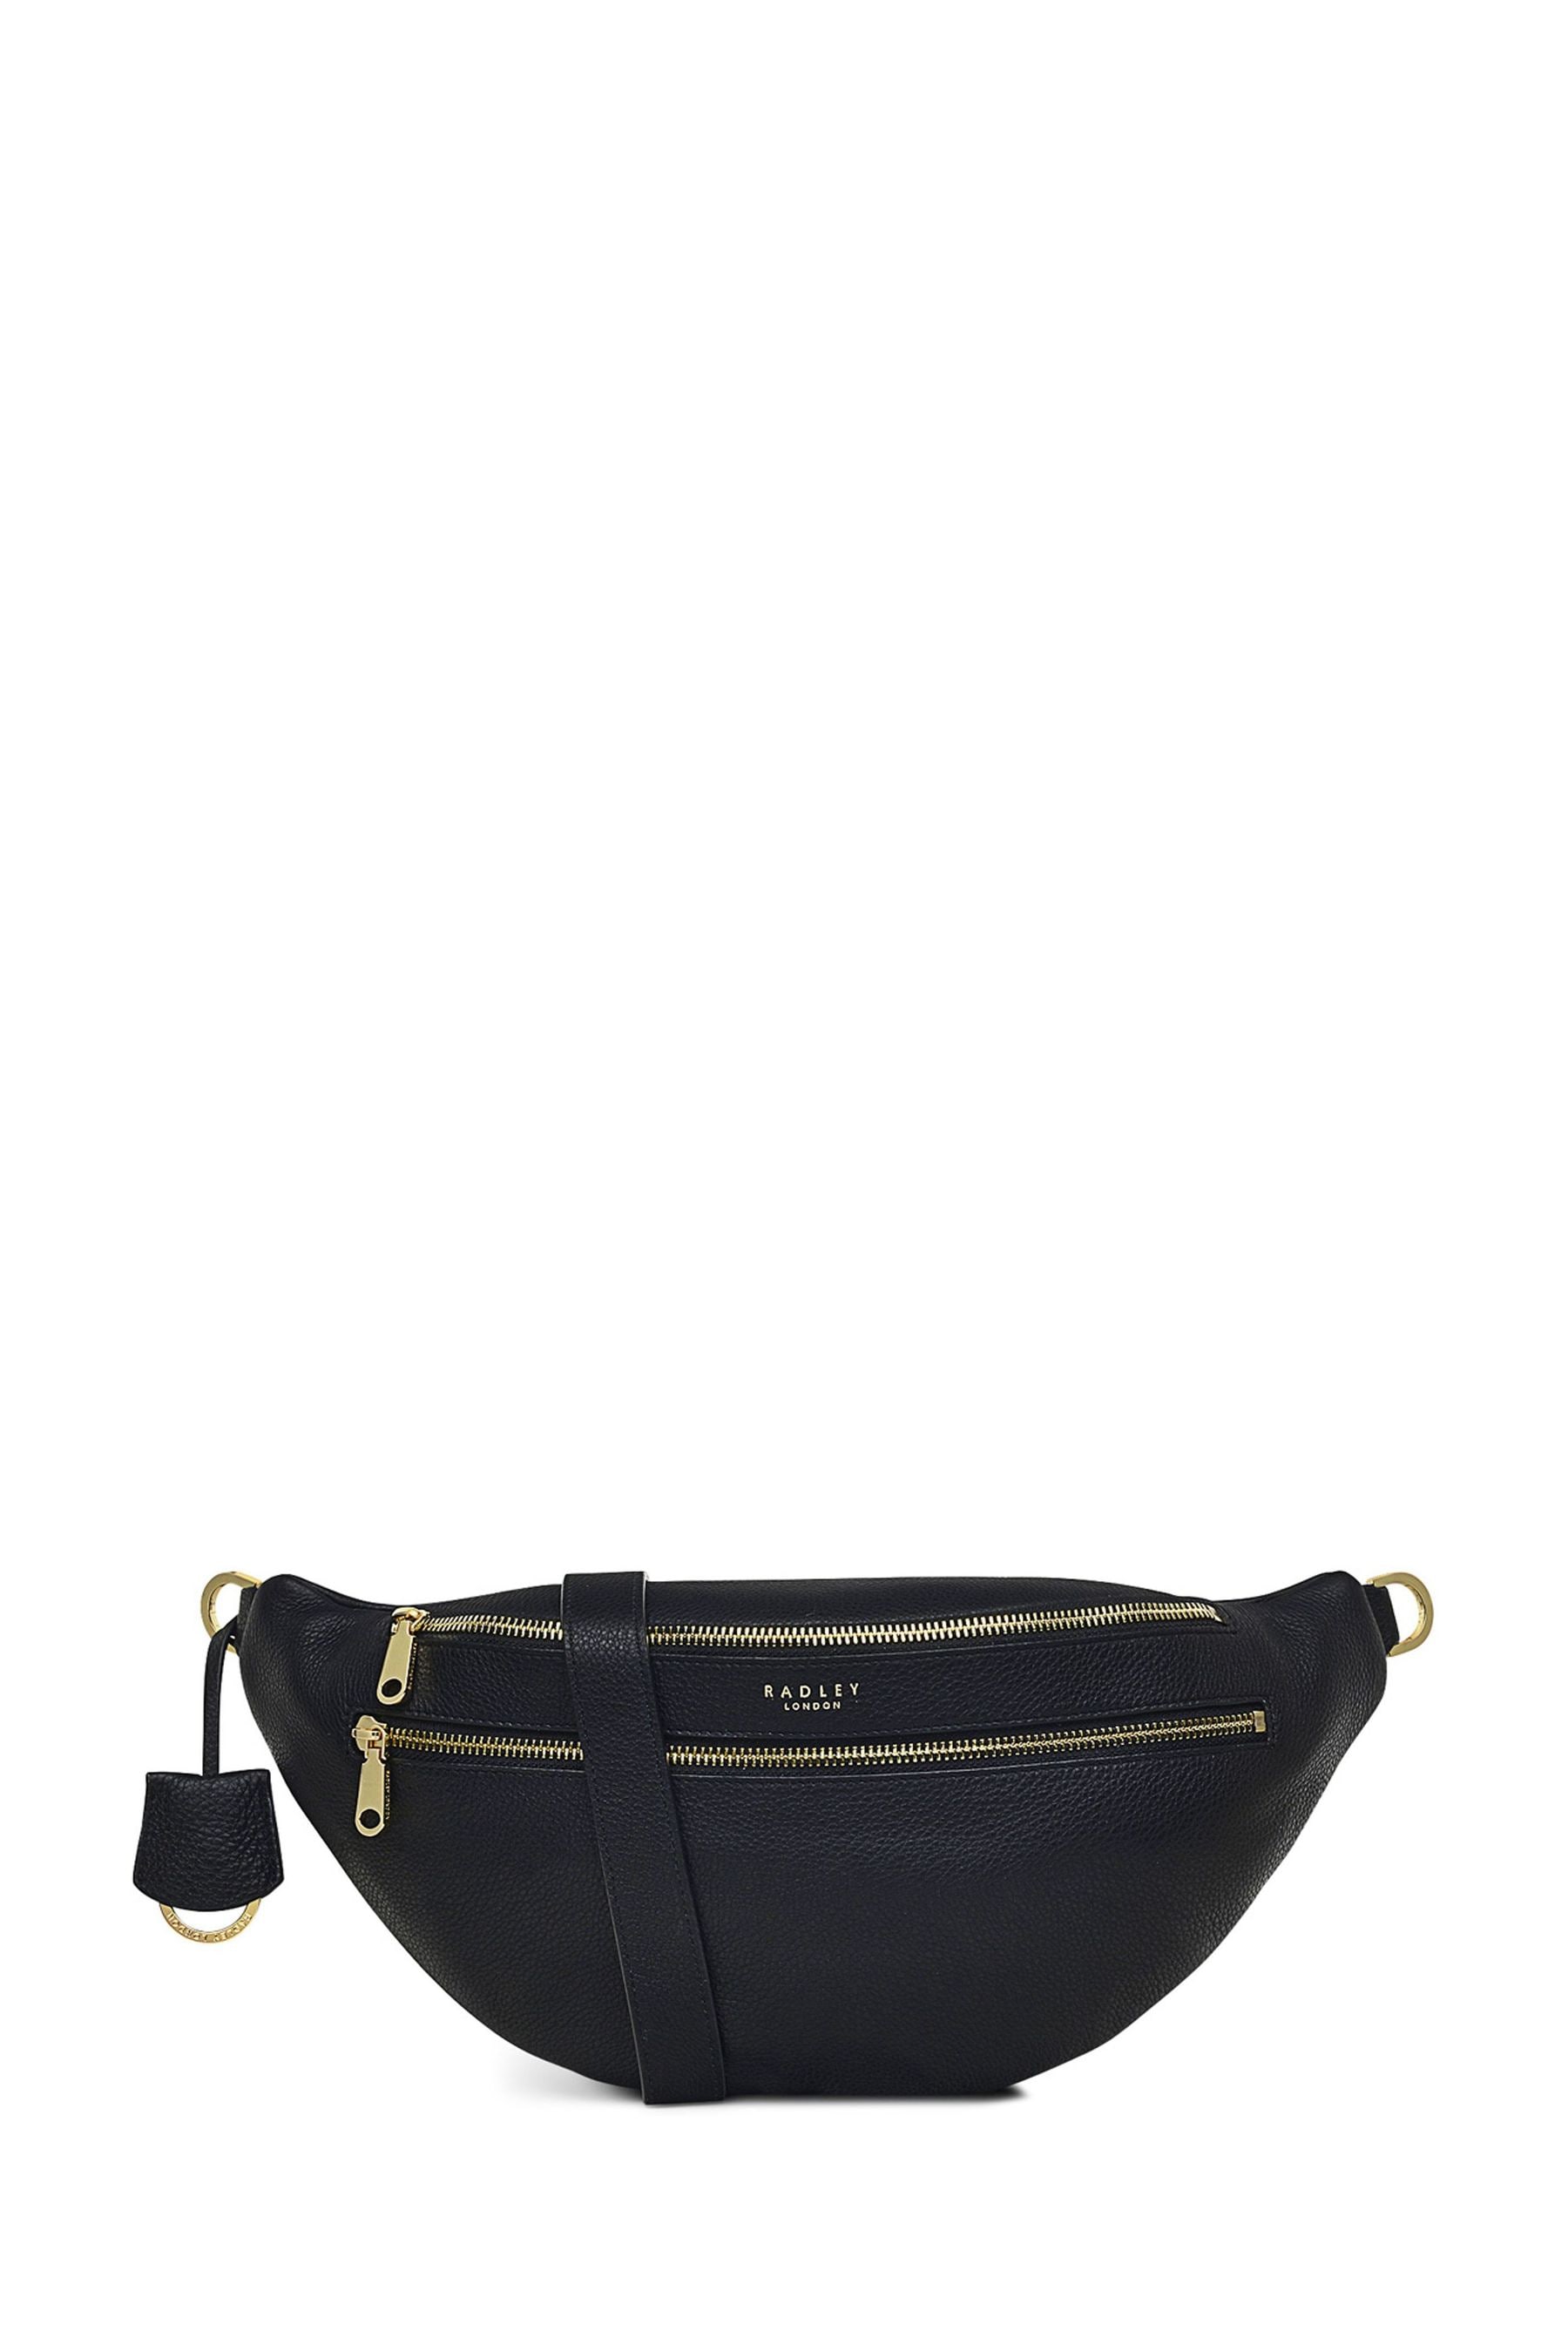 Buy Radley London Derwent Drive Medium Zip-Top Sling Black Bag from the ...